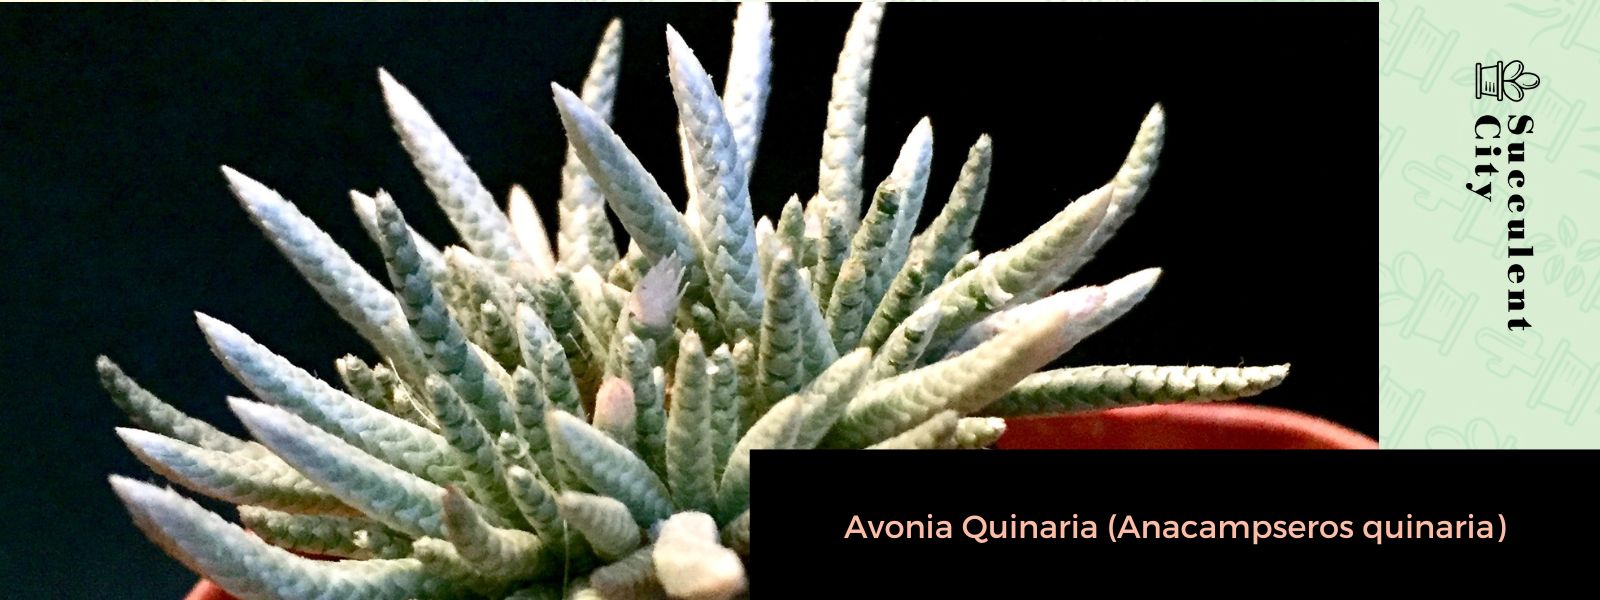 Avonia Quinaria (Anacampseros quinaria)